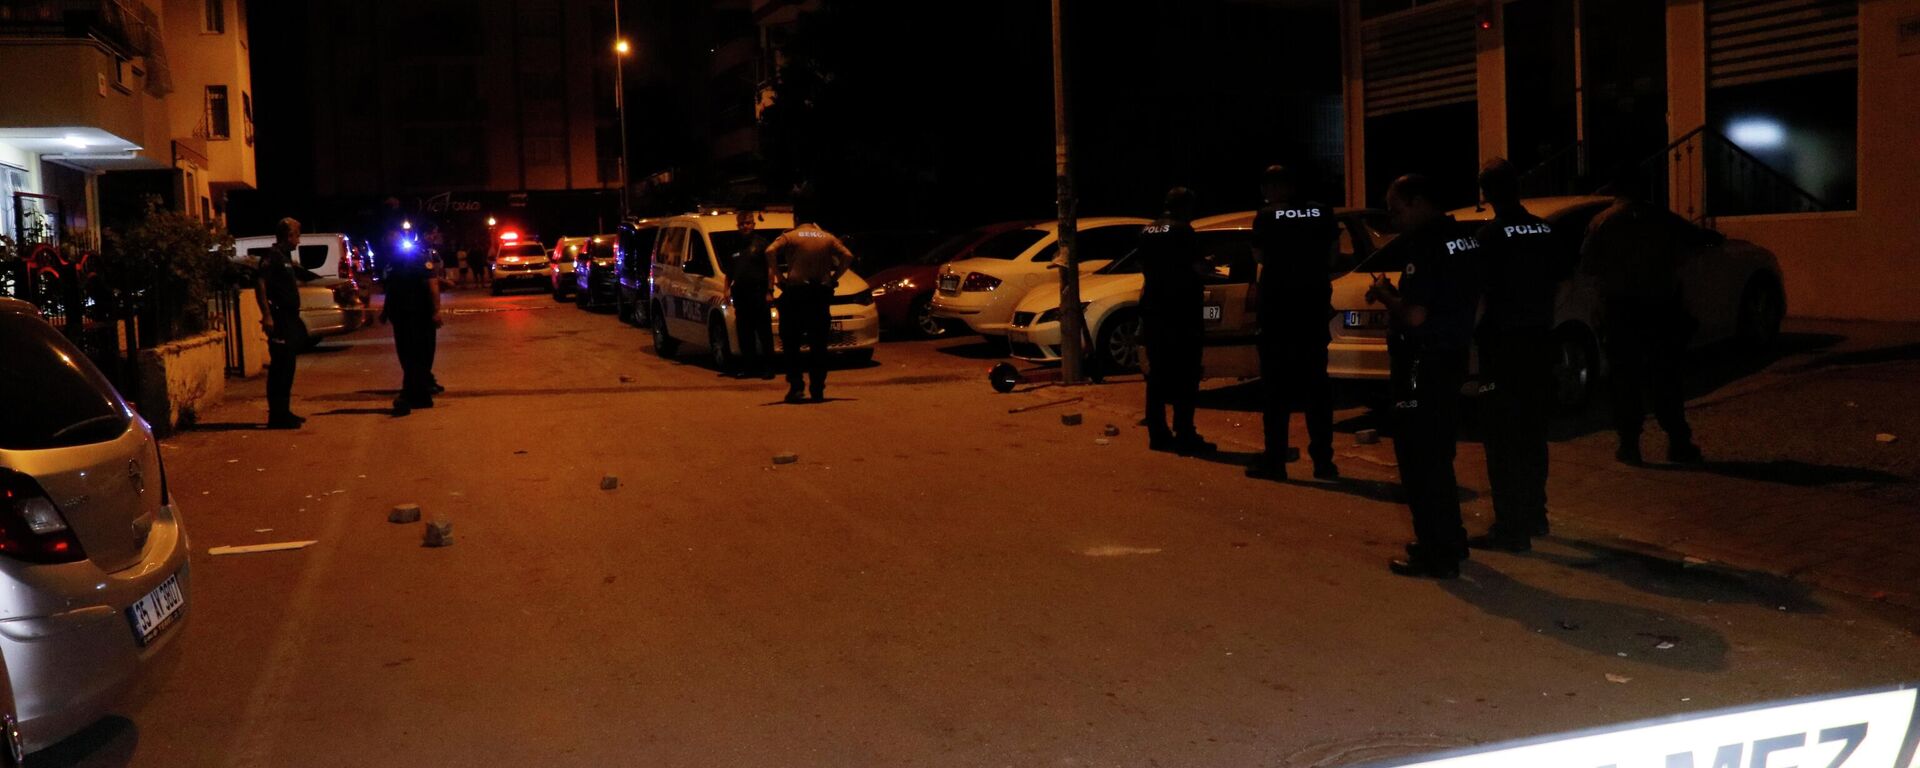 Adana’da iki grup arasında çıkan silahlı kavgada 2 kişi tabancayla vurularak yaralandı. - Sputnik Türkiye, 1920, 08.07.2022